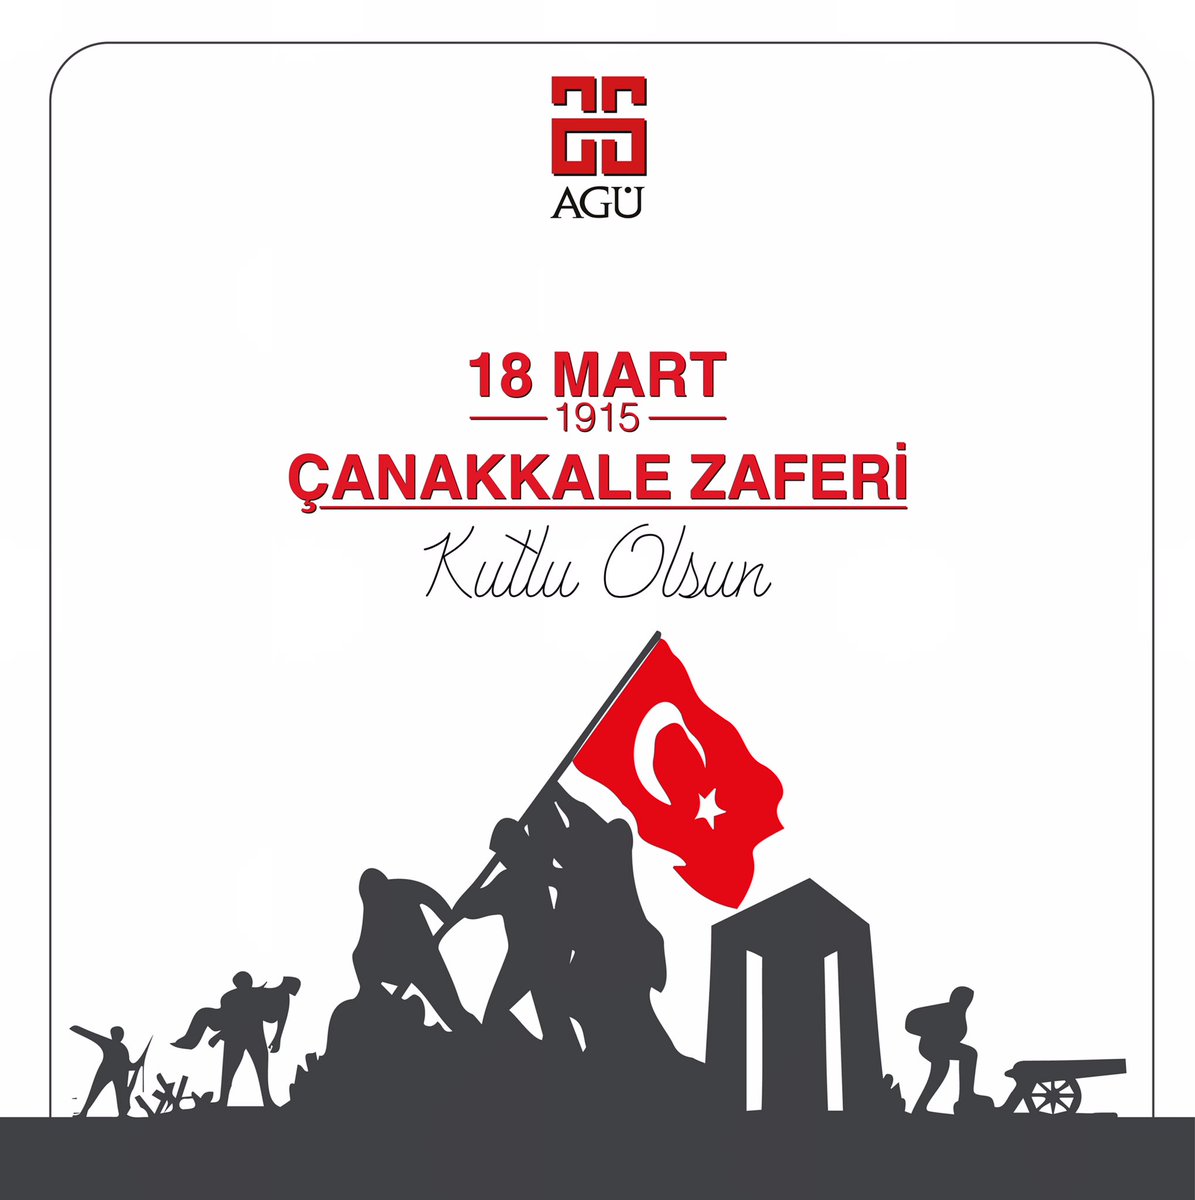 18 Mart Çanakkale Zaferi'nin 109’uncu yıldönümünü kutluyor ve tüm şehitlerimizi rahmetle anıyoruz.